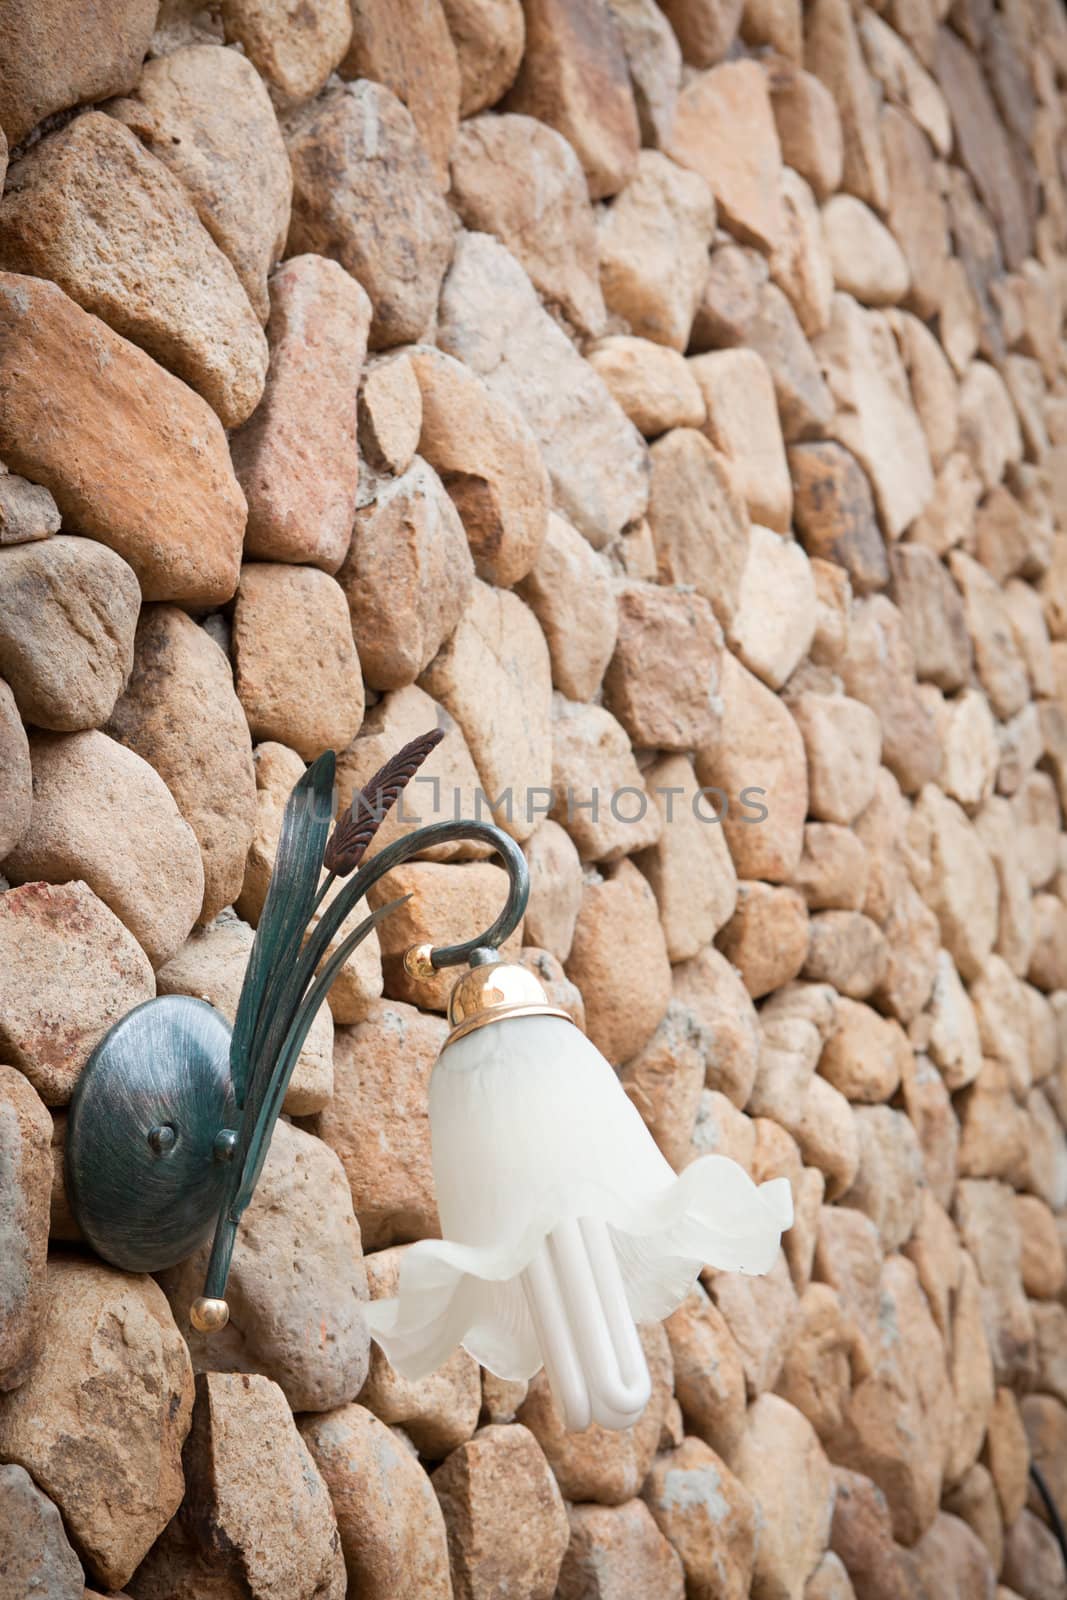 Wall lamp on stone wall by Suriyaphoto